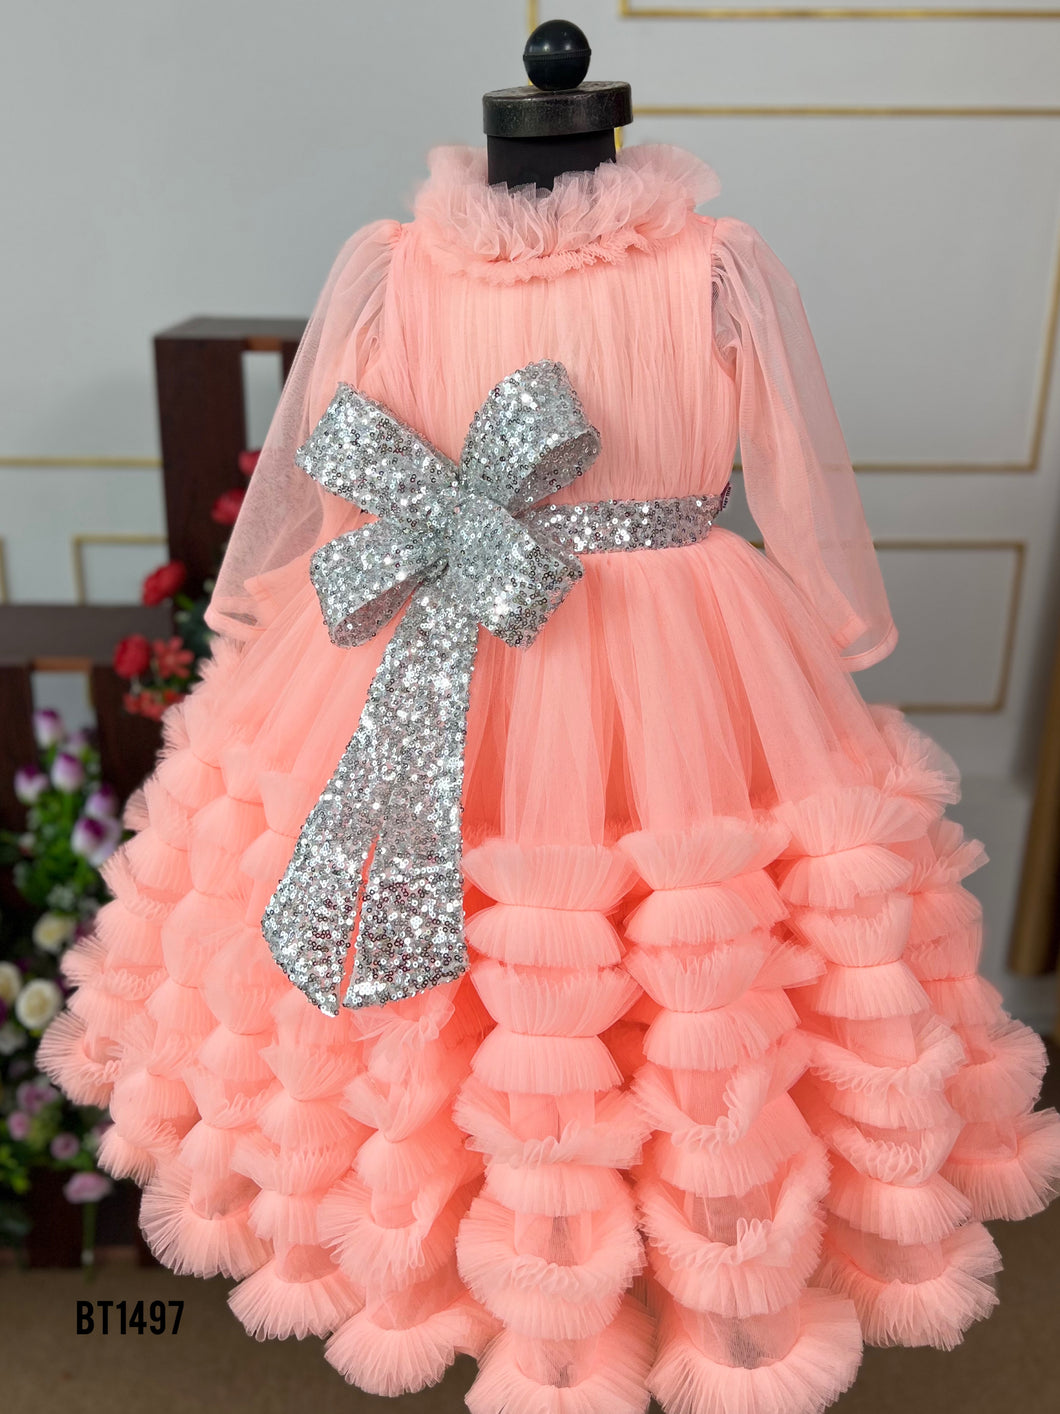 BT1497 Peach Shimmer Cascade Dress - Elegance in Whirls!